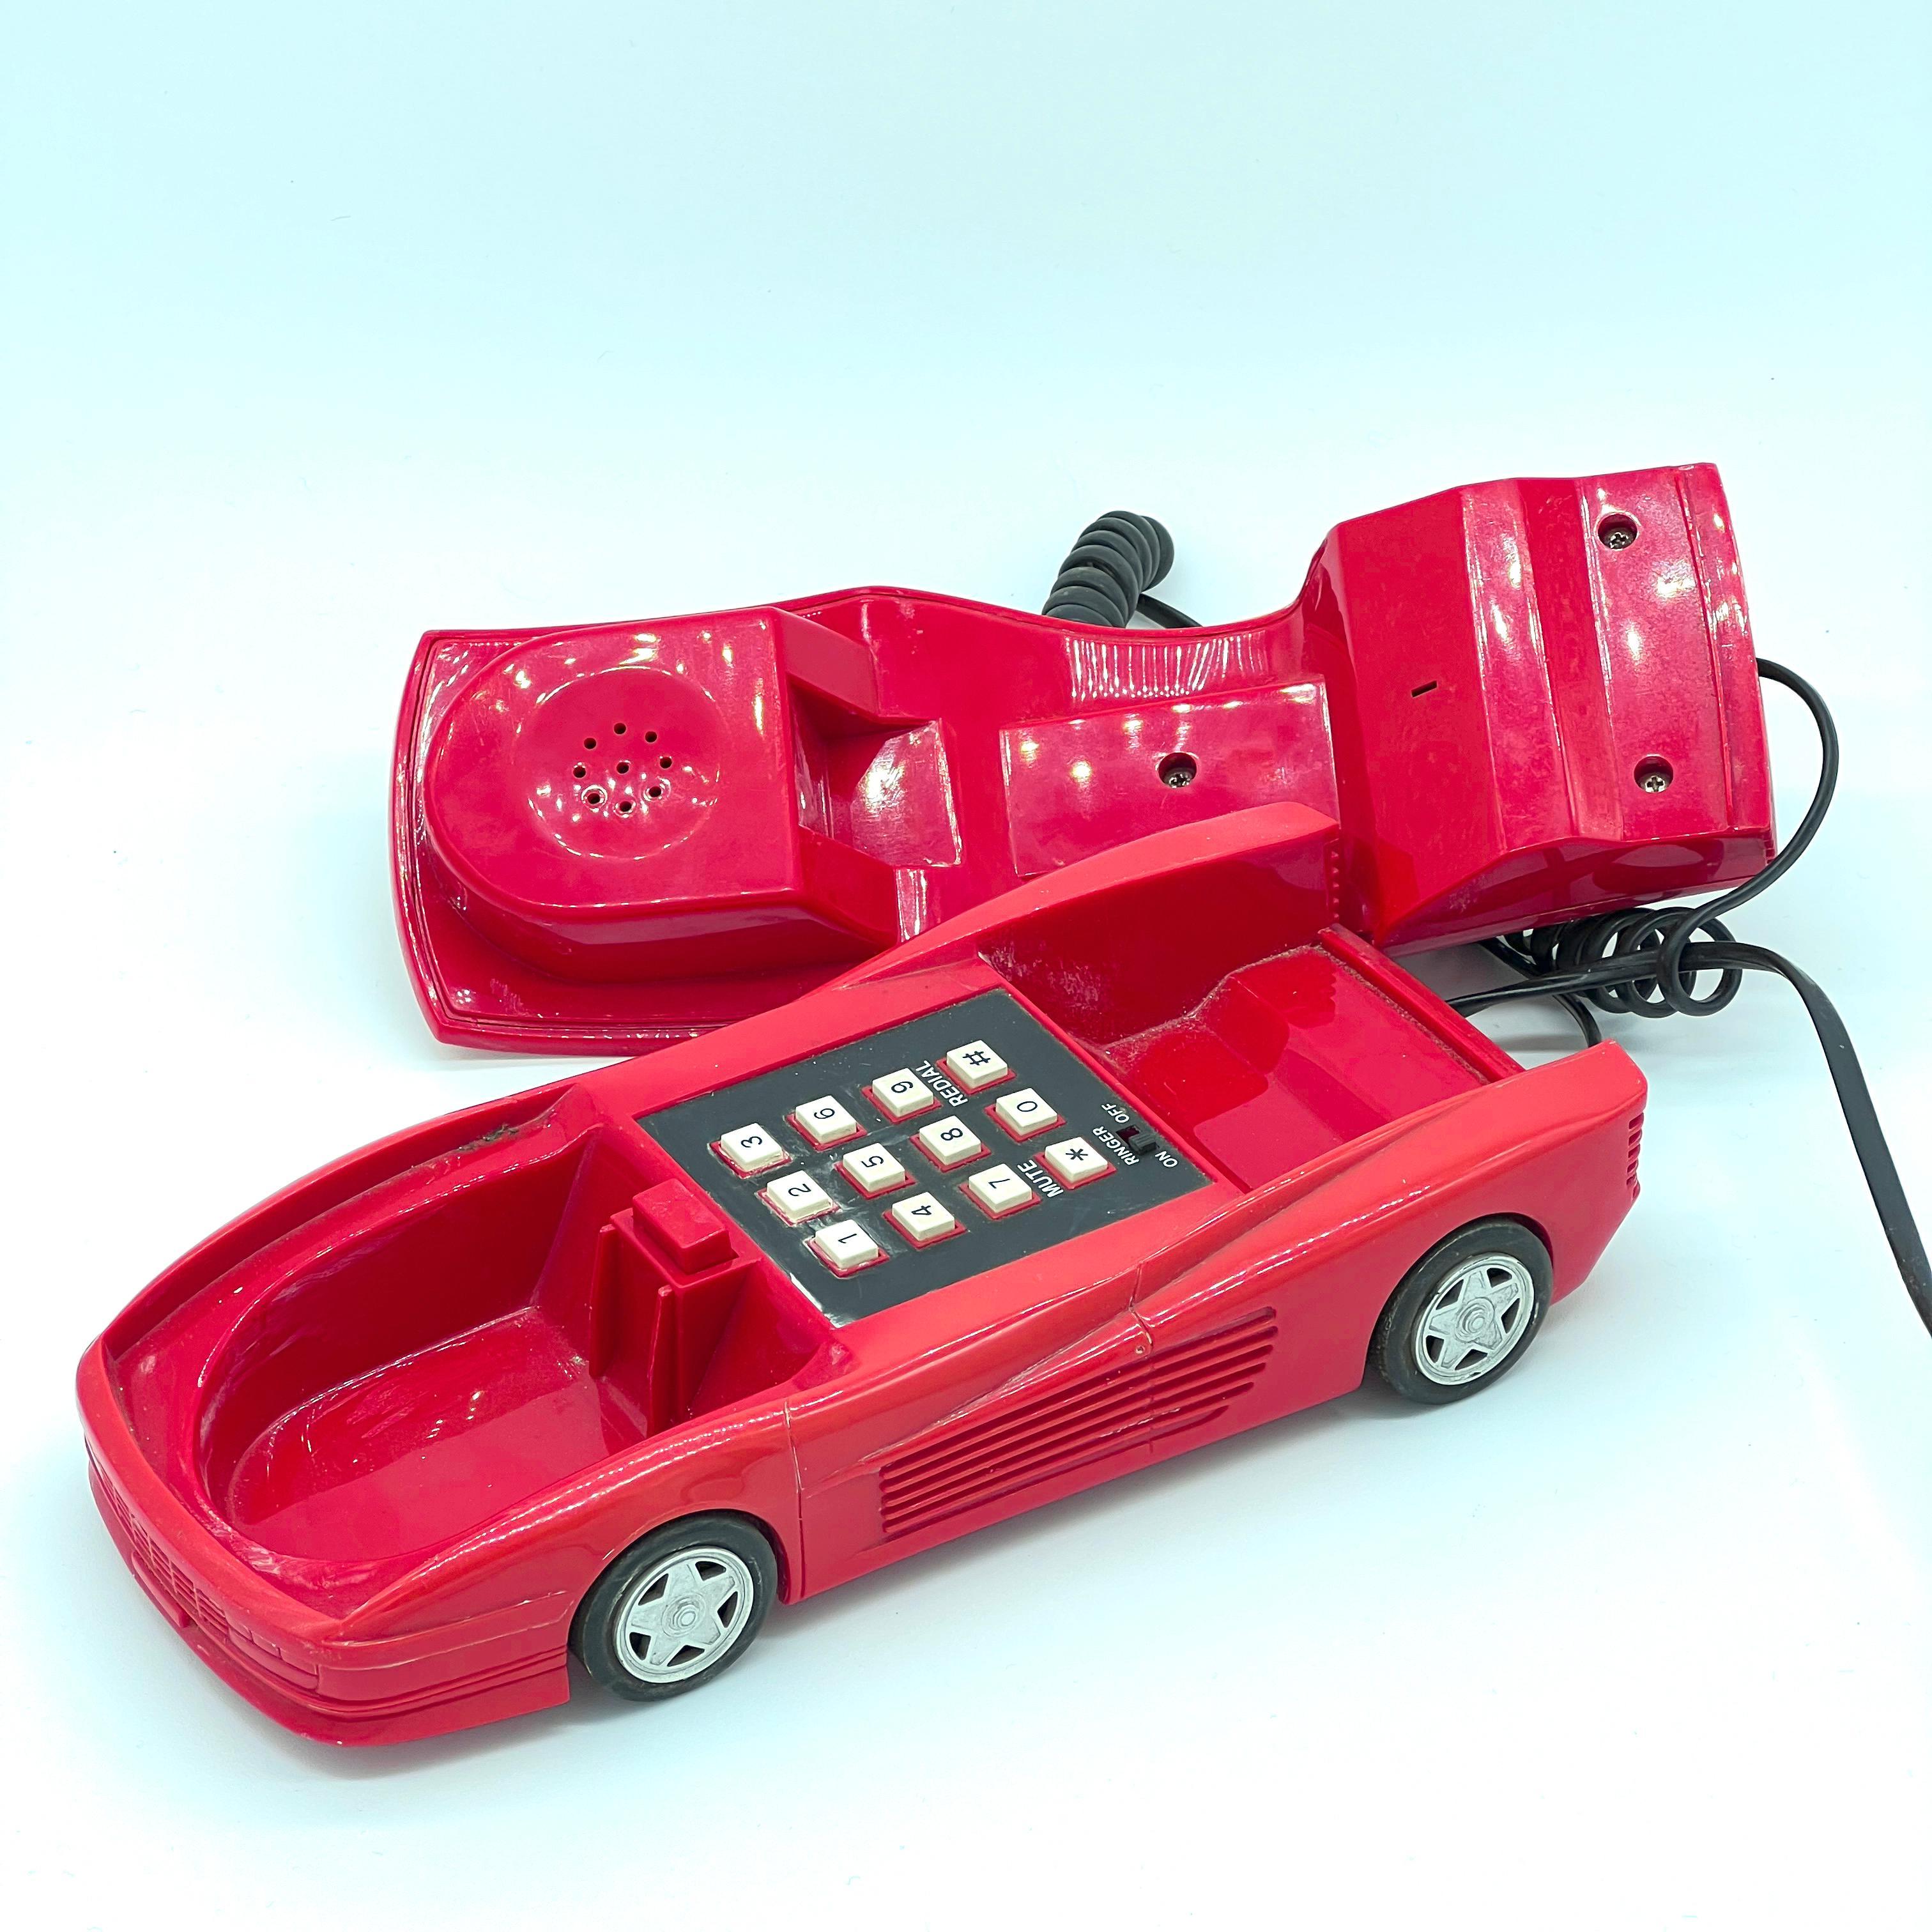 phone in car 80s